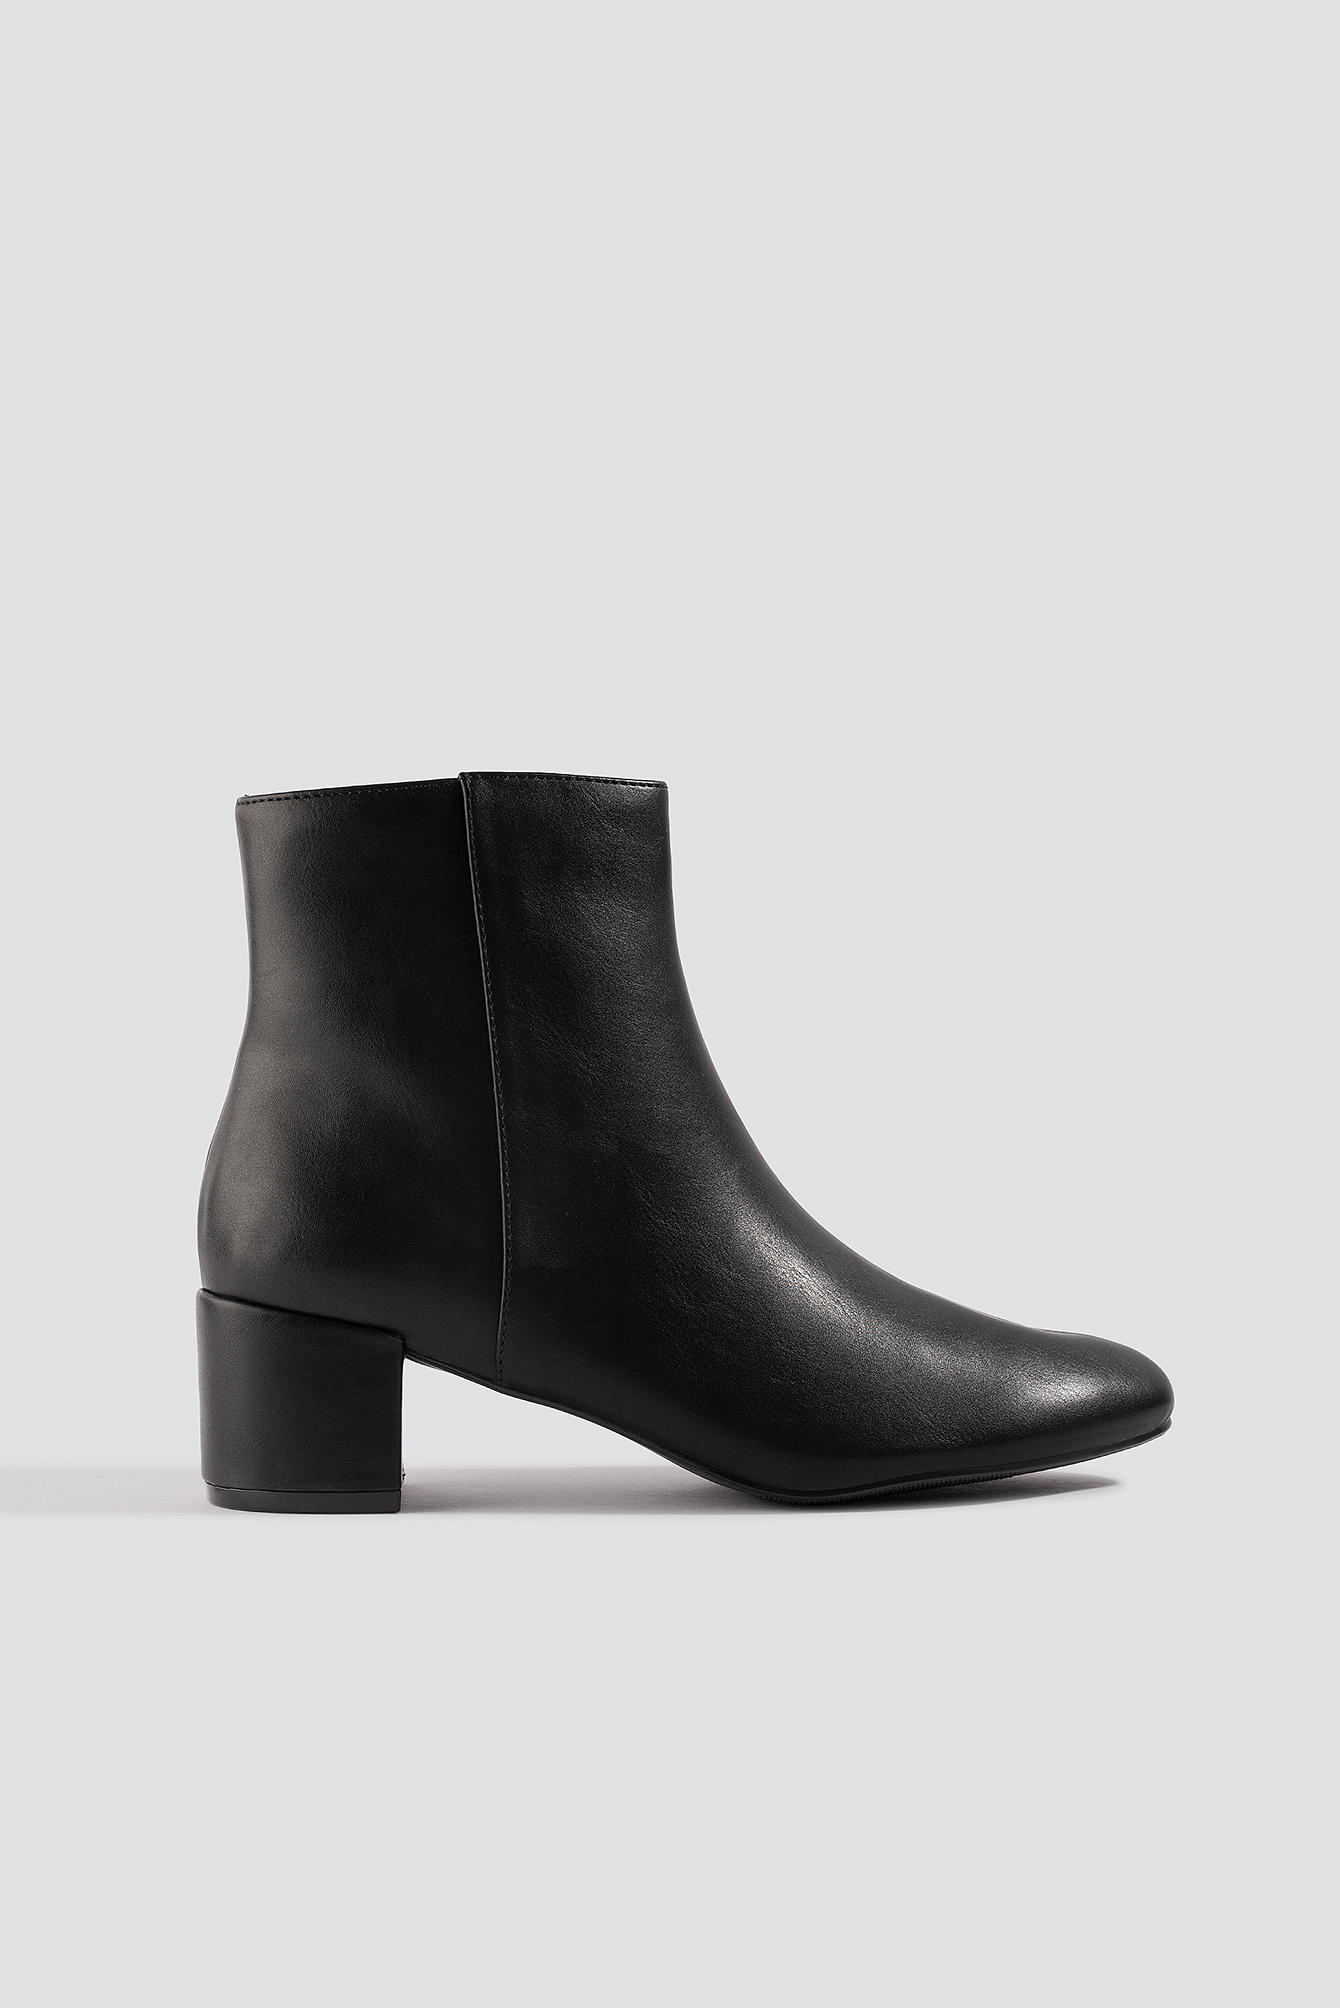 black bootie low heel